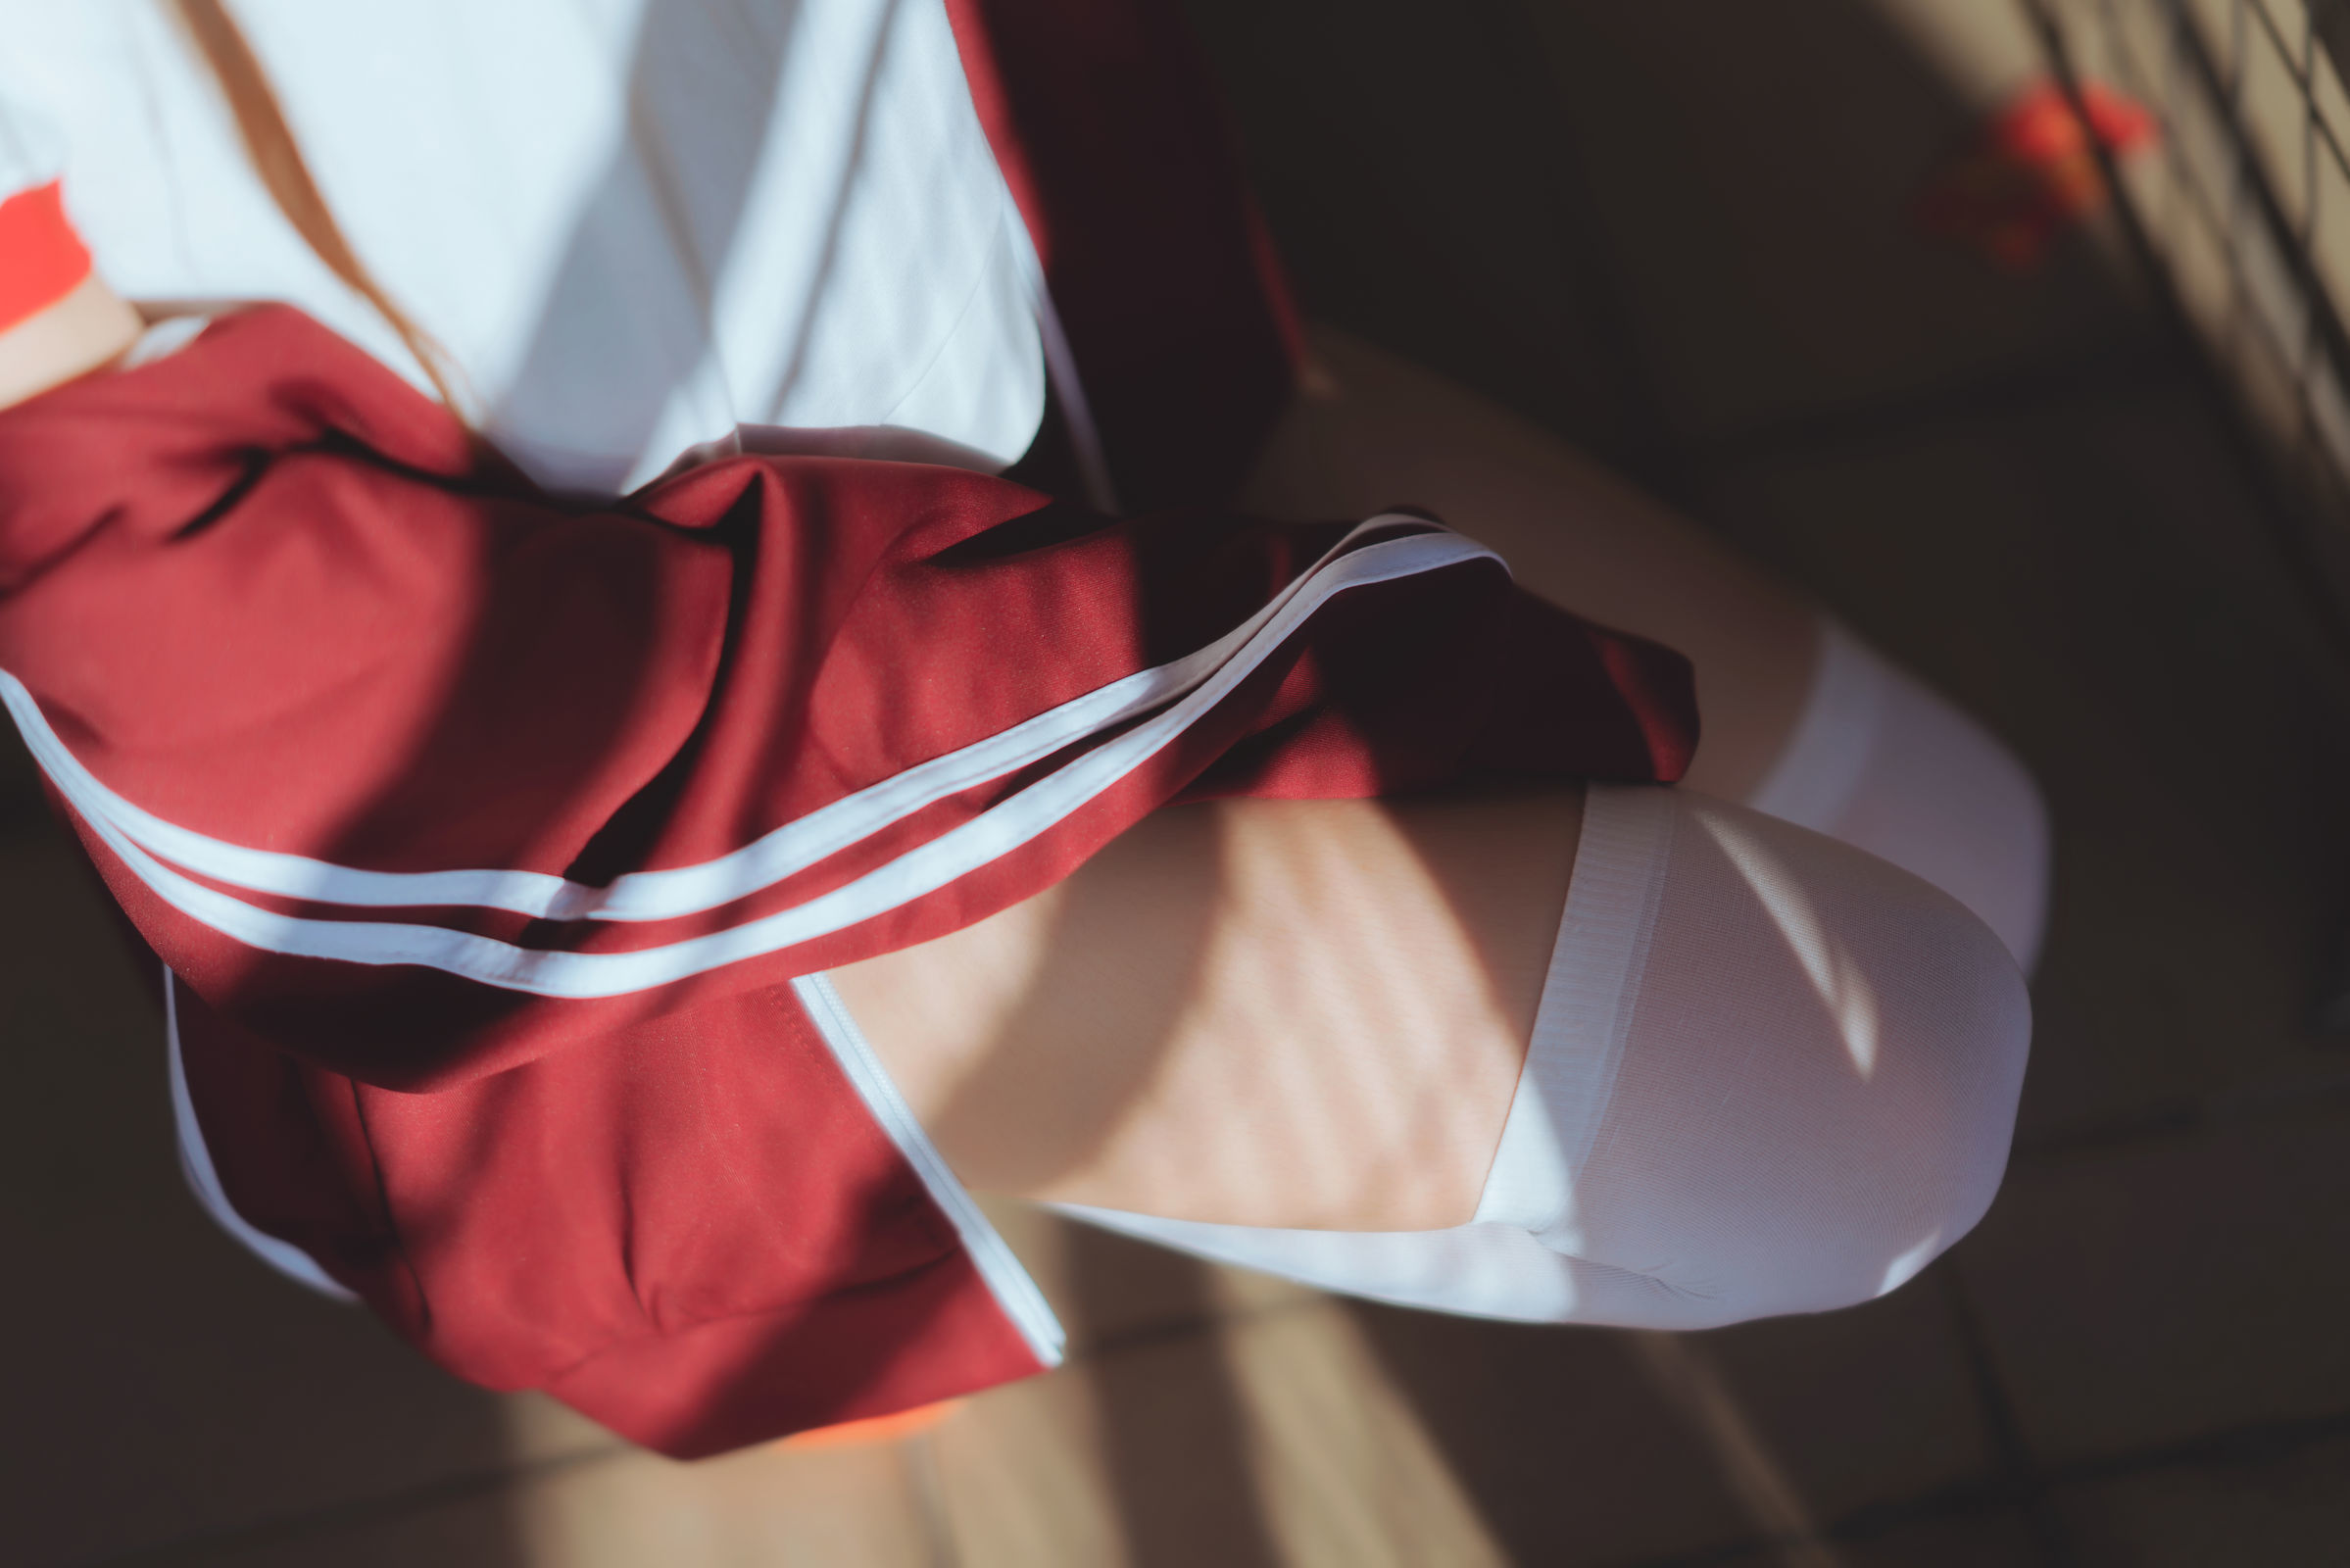 [萝莉COS] 桜桃喵 - 红色体操服